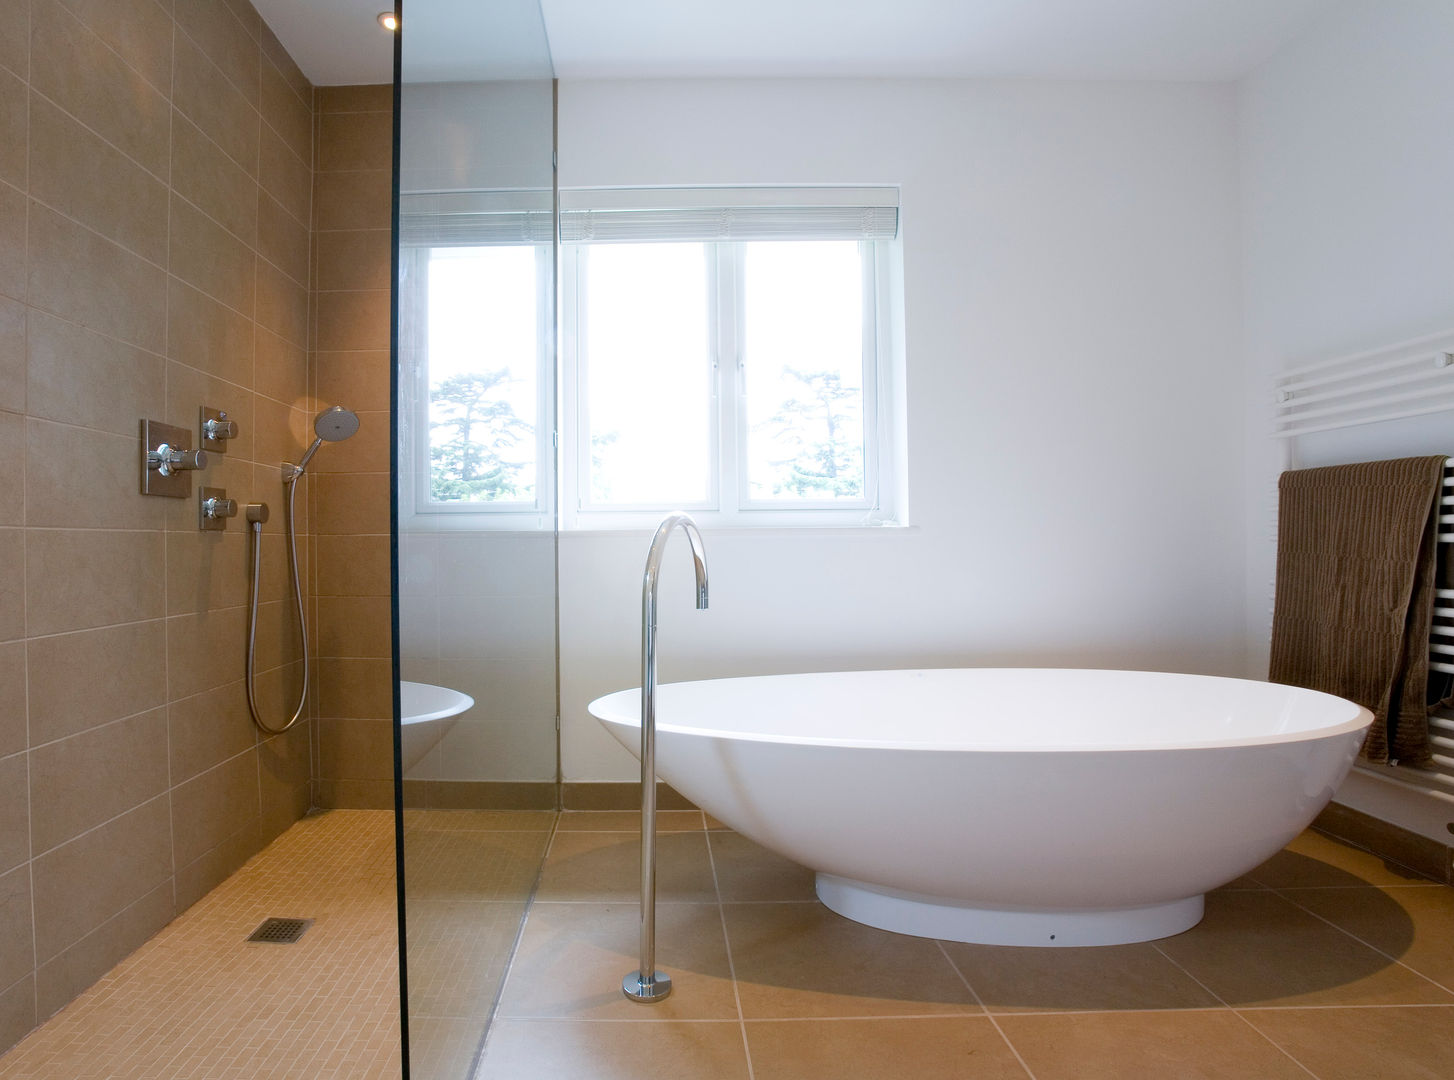 Fazer uma casa de raiz, Architect Your Home Architect Your Home Modern bathroom